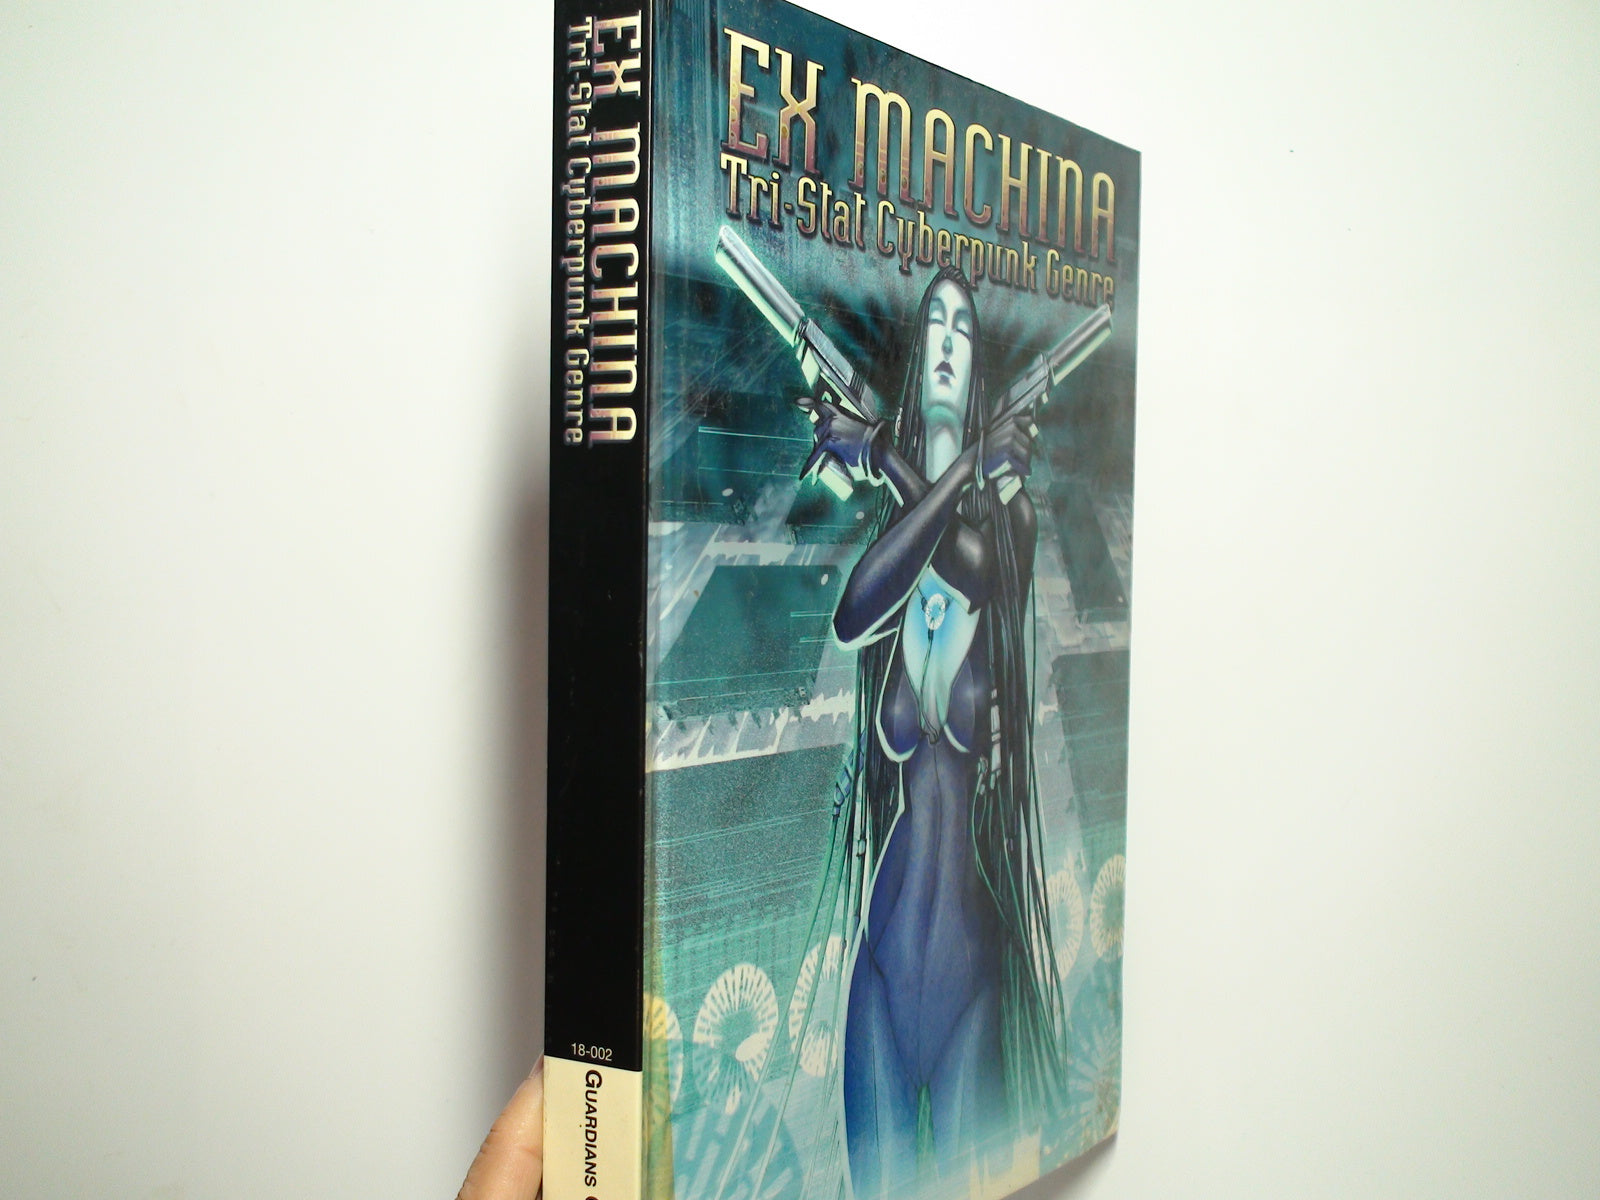 Ex Machina, Tri Stat Cyberpunk Genre, Guardians of Order, #18-002, 1st Ed, 2004